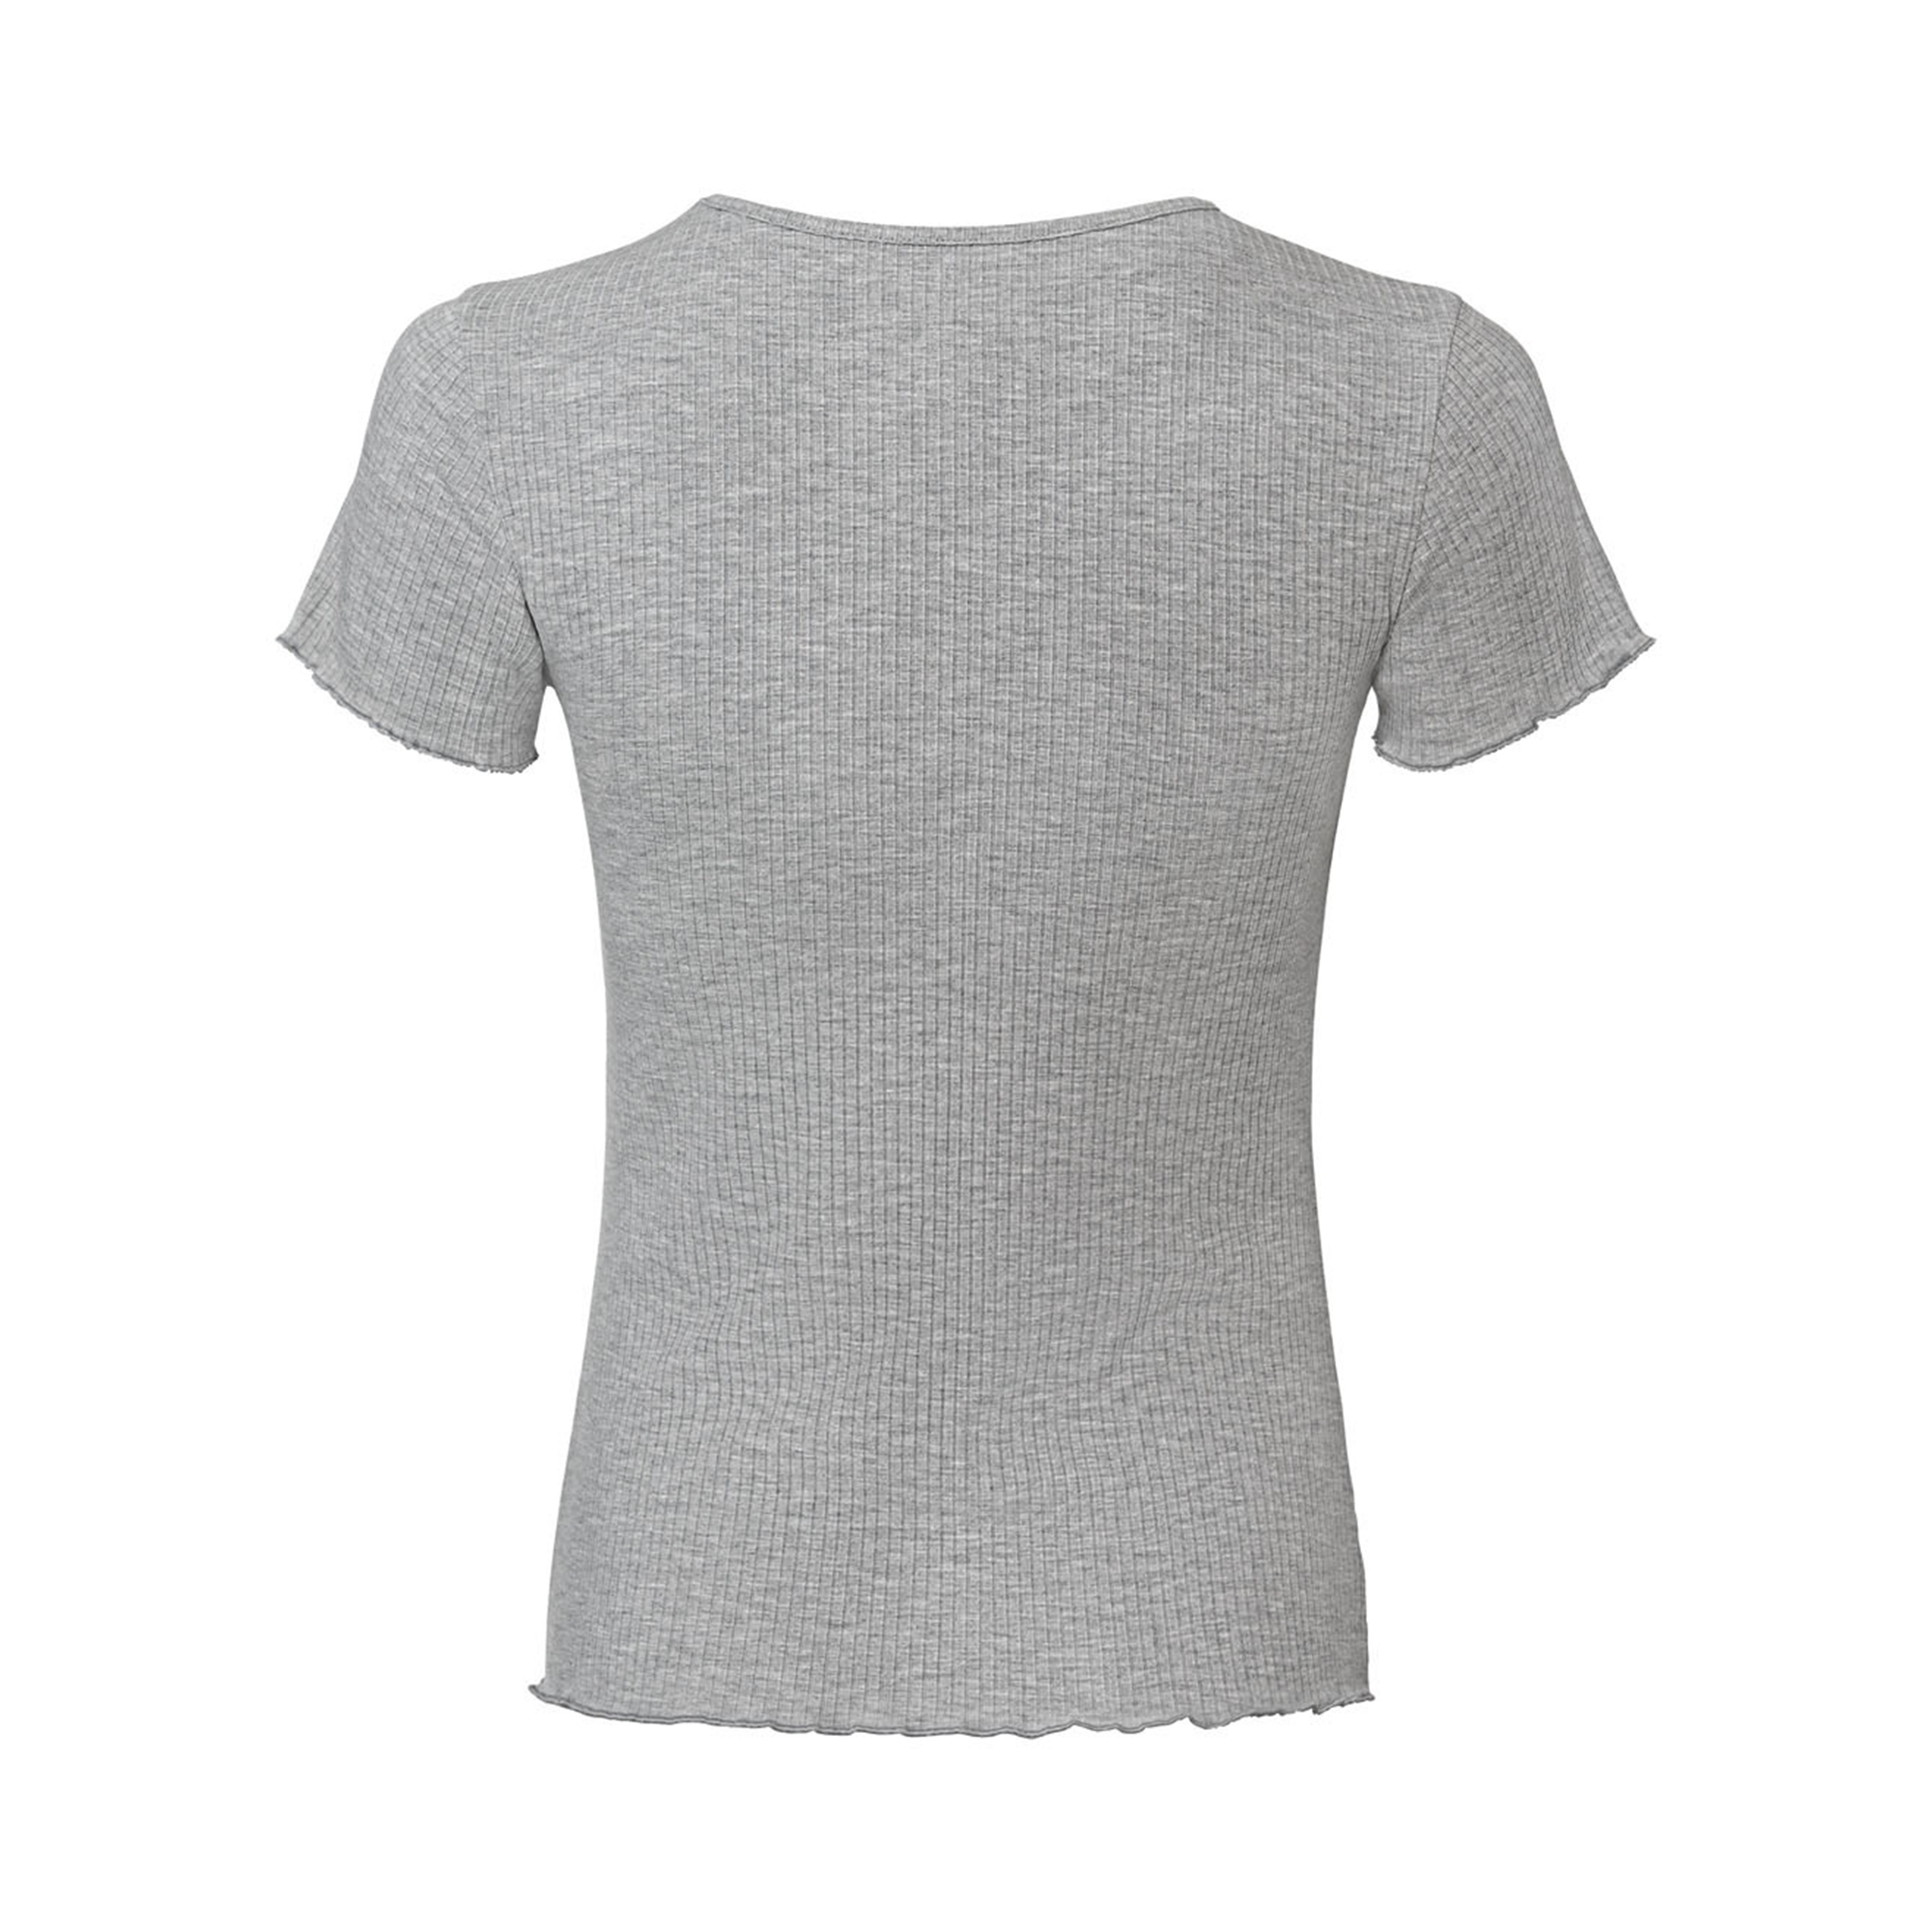 تی شرت آستین کوتاه زنانه اسمارا مدل کبریتی رنگ طوسی -  - 2